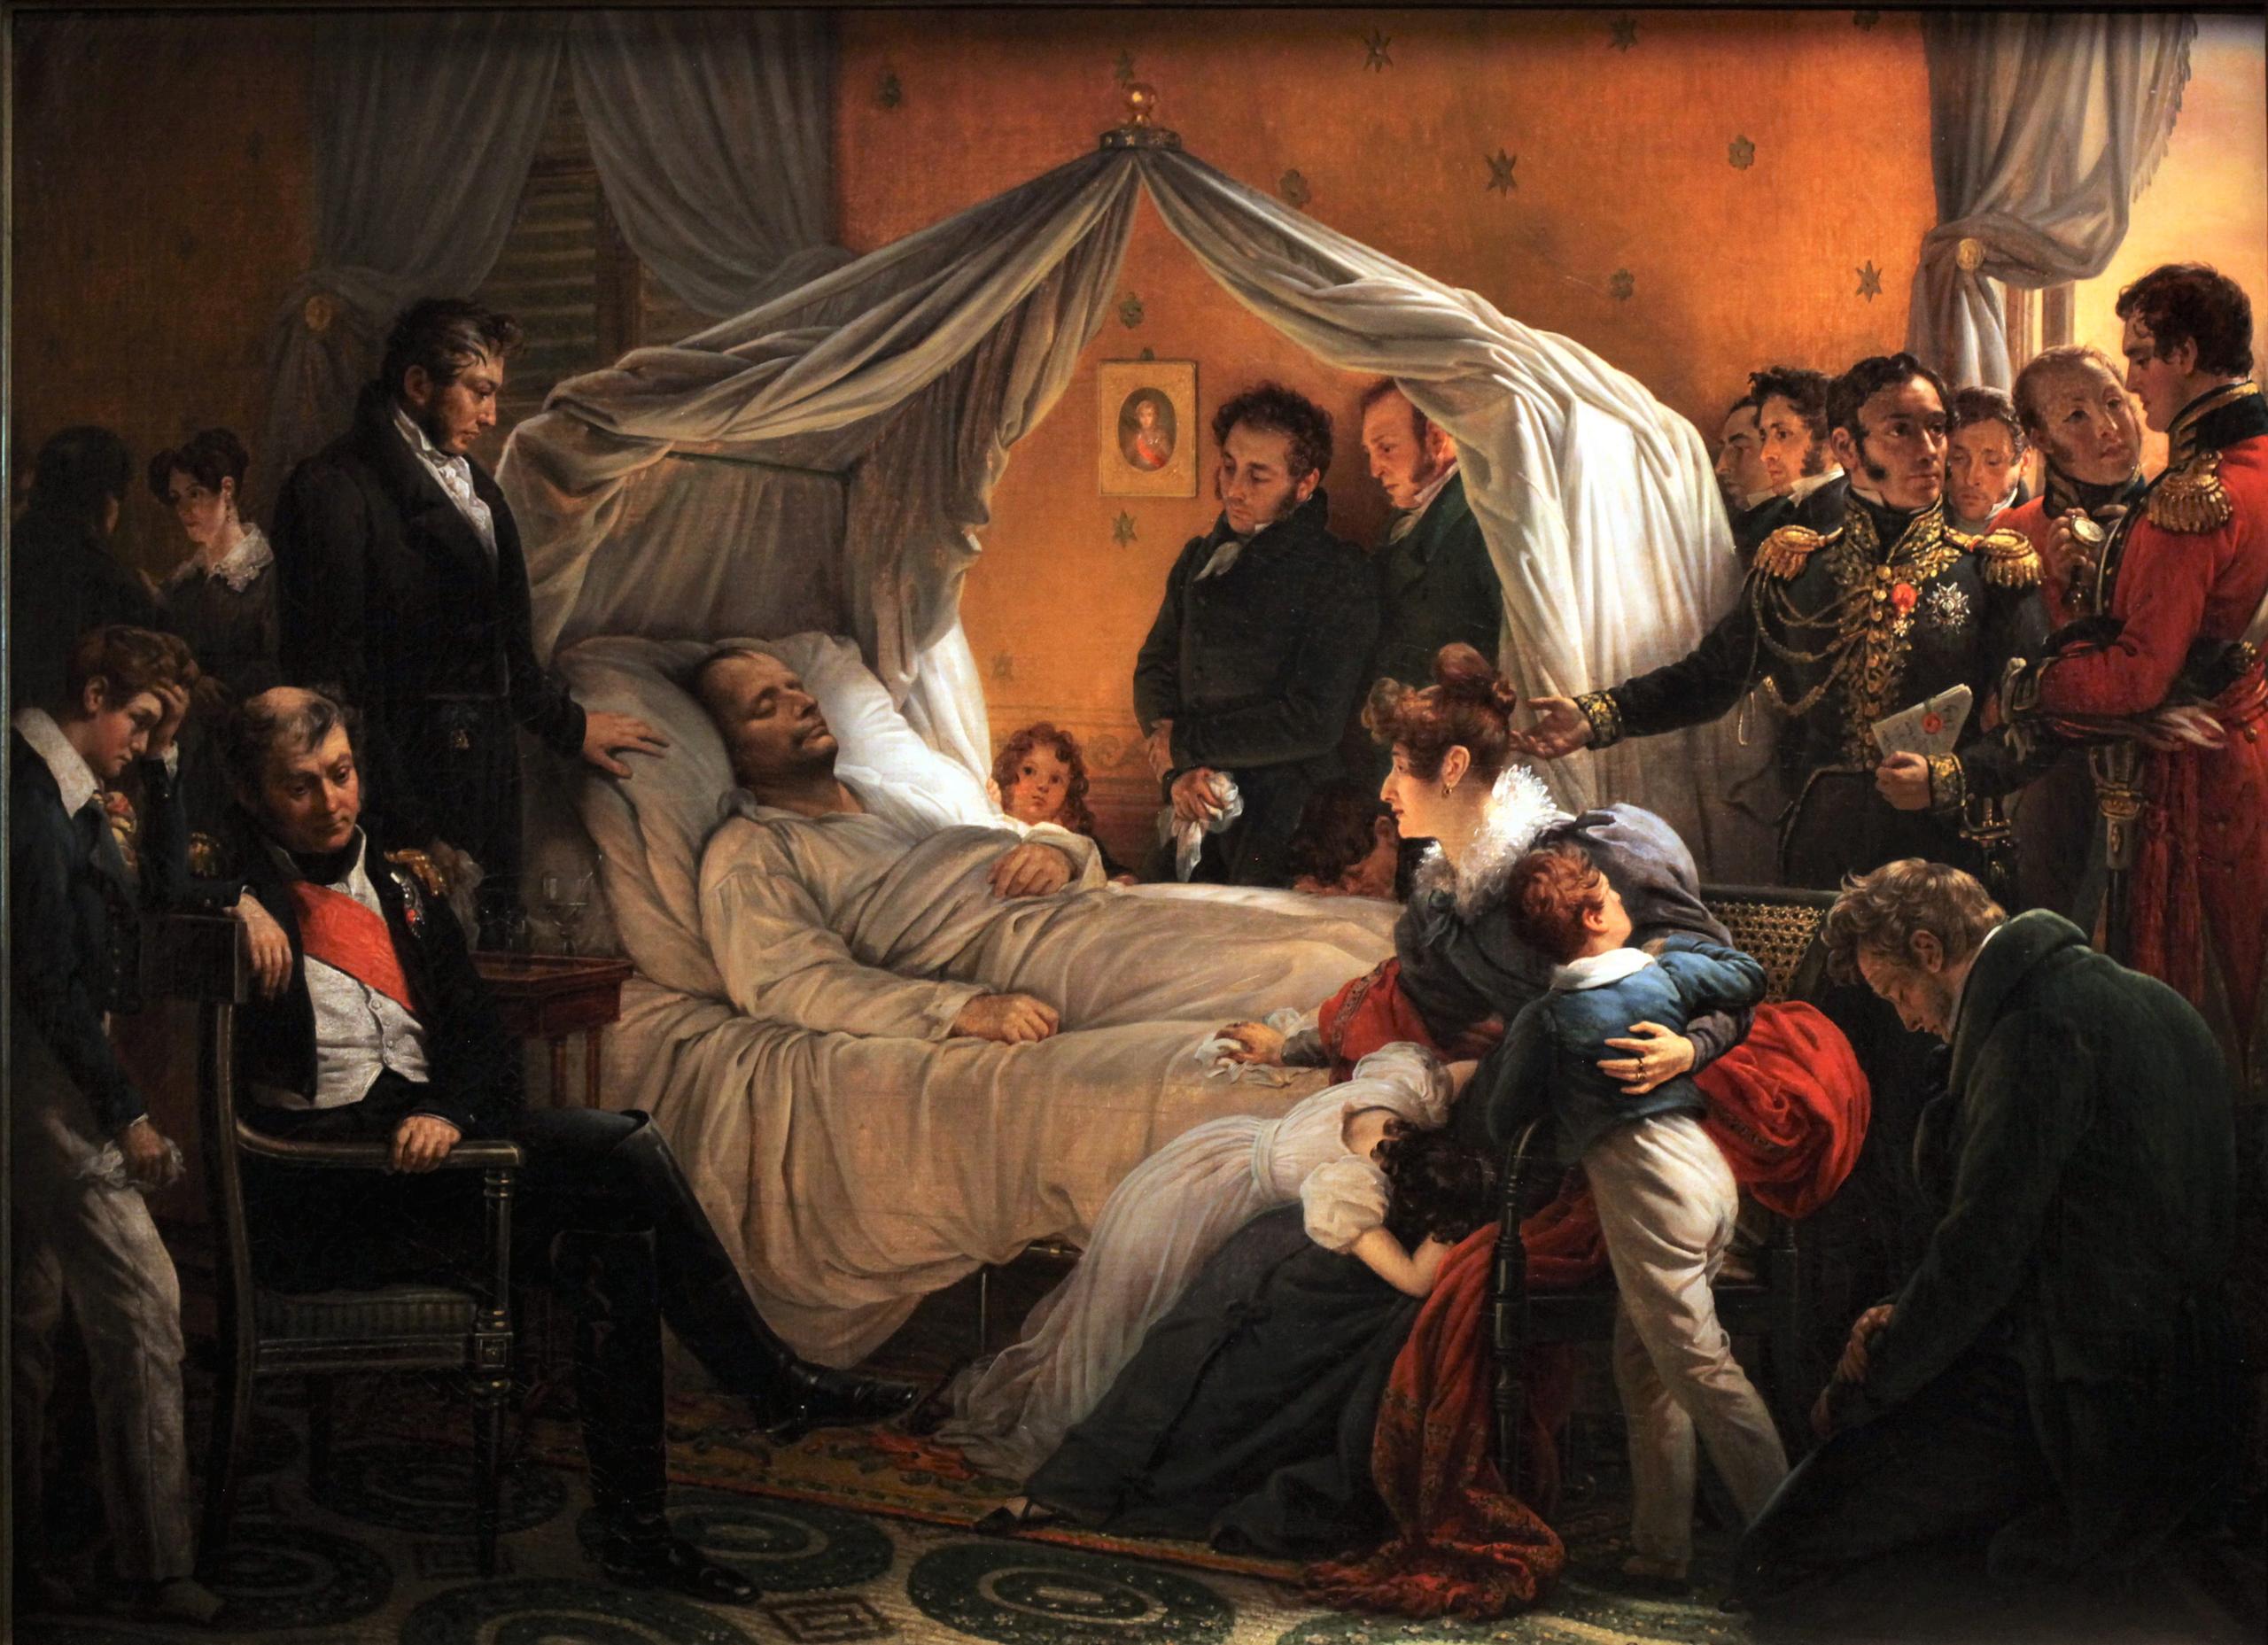 Mort de Napoléon